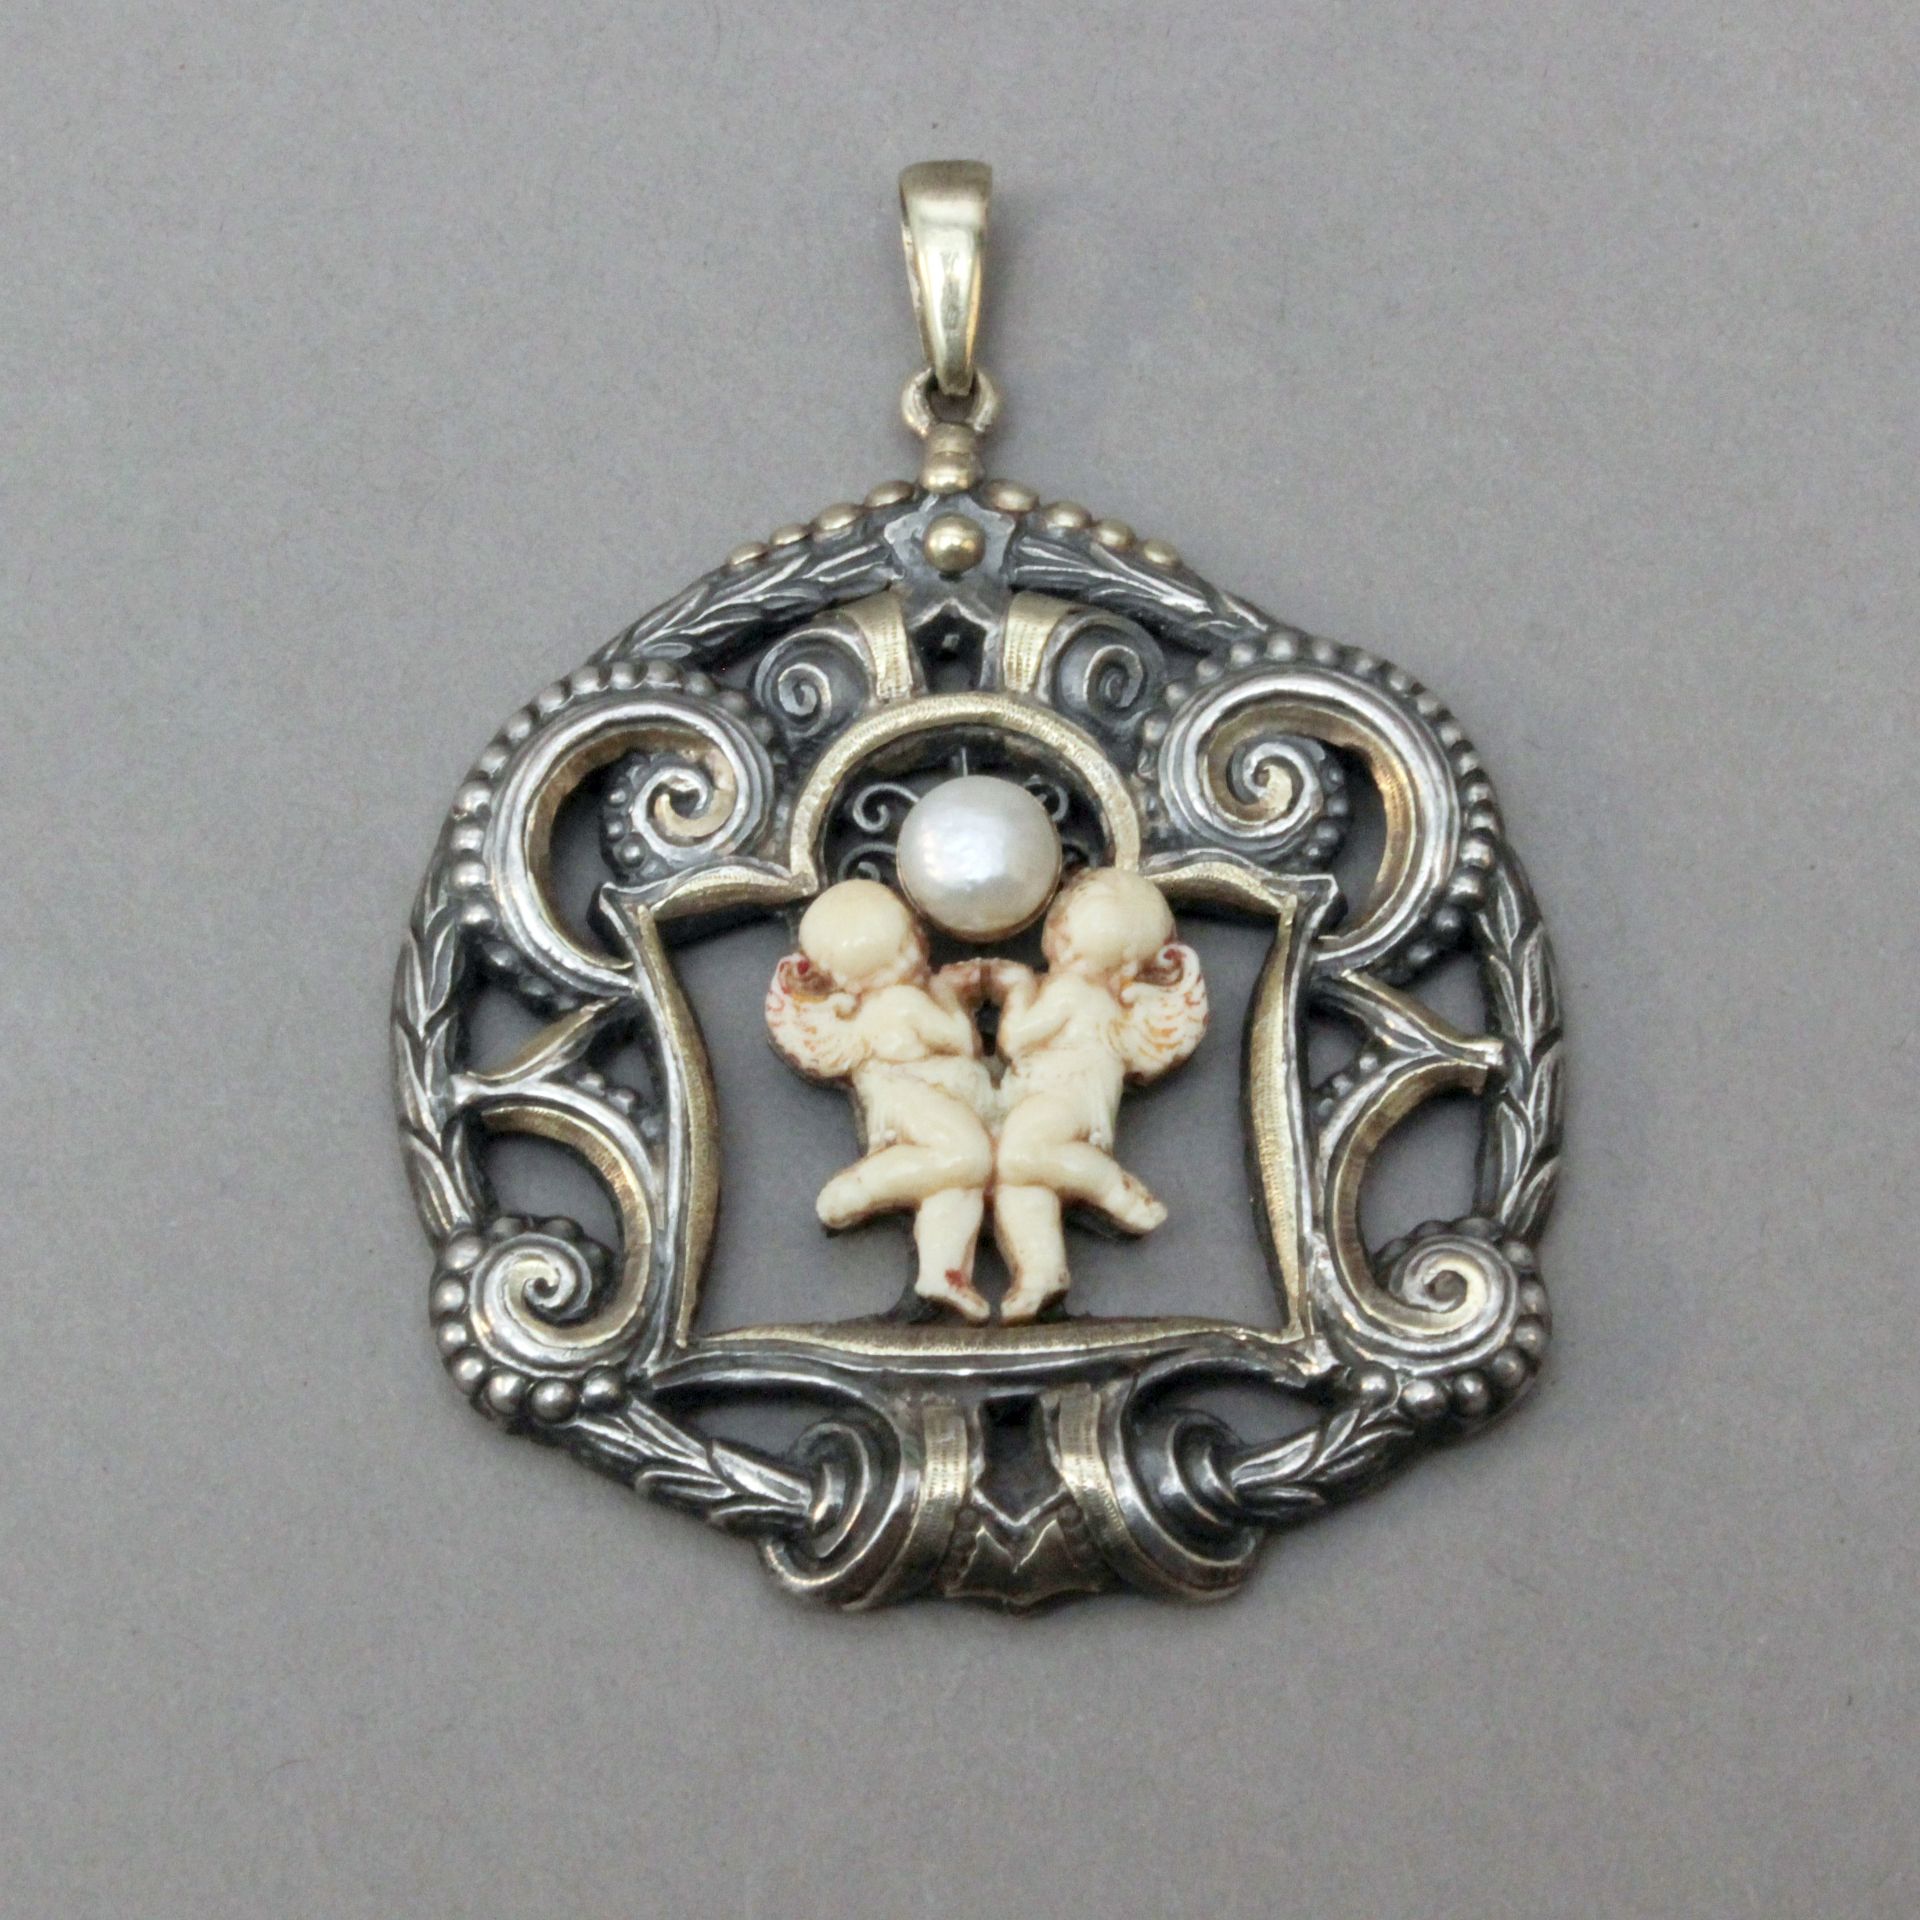 Ramon Sunyer Clarà. A silver and gold pendant